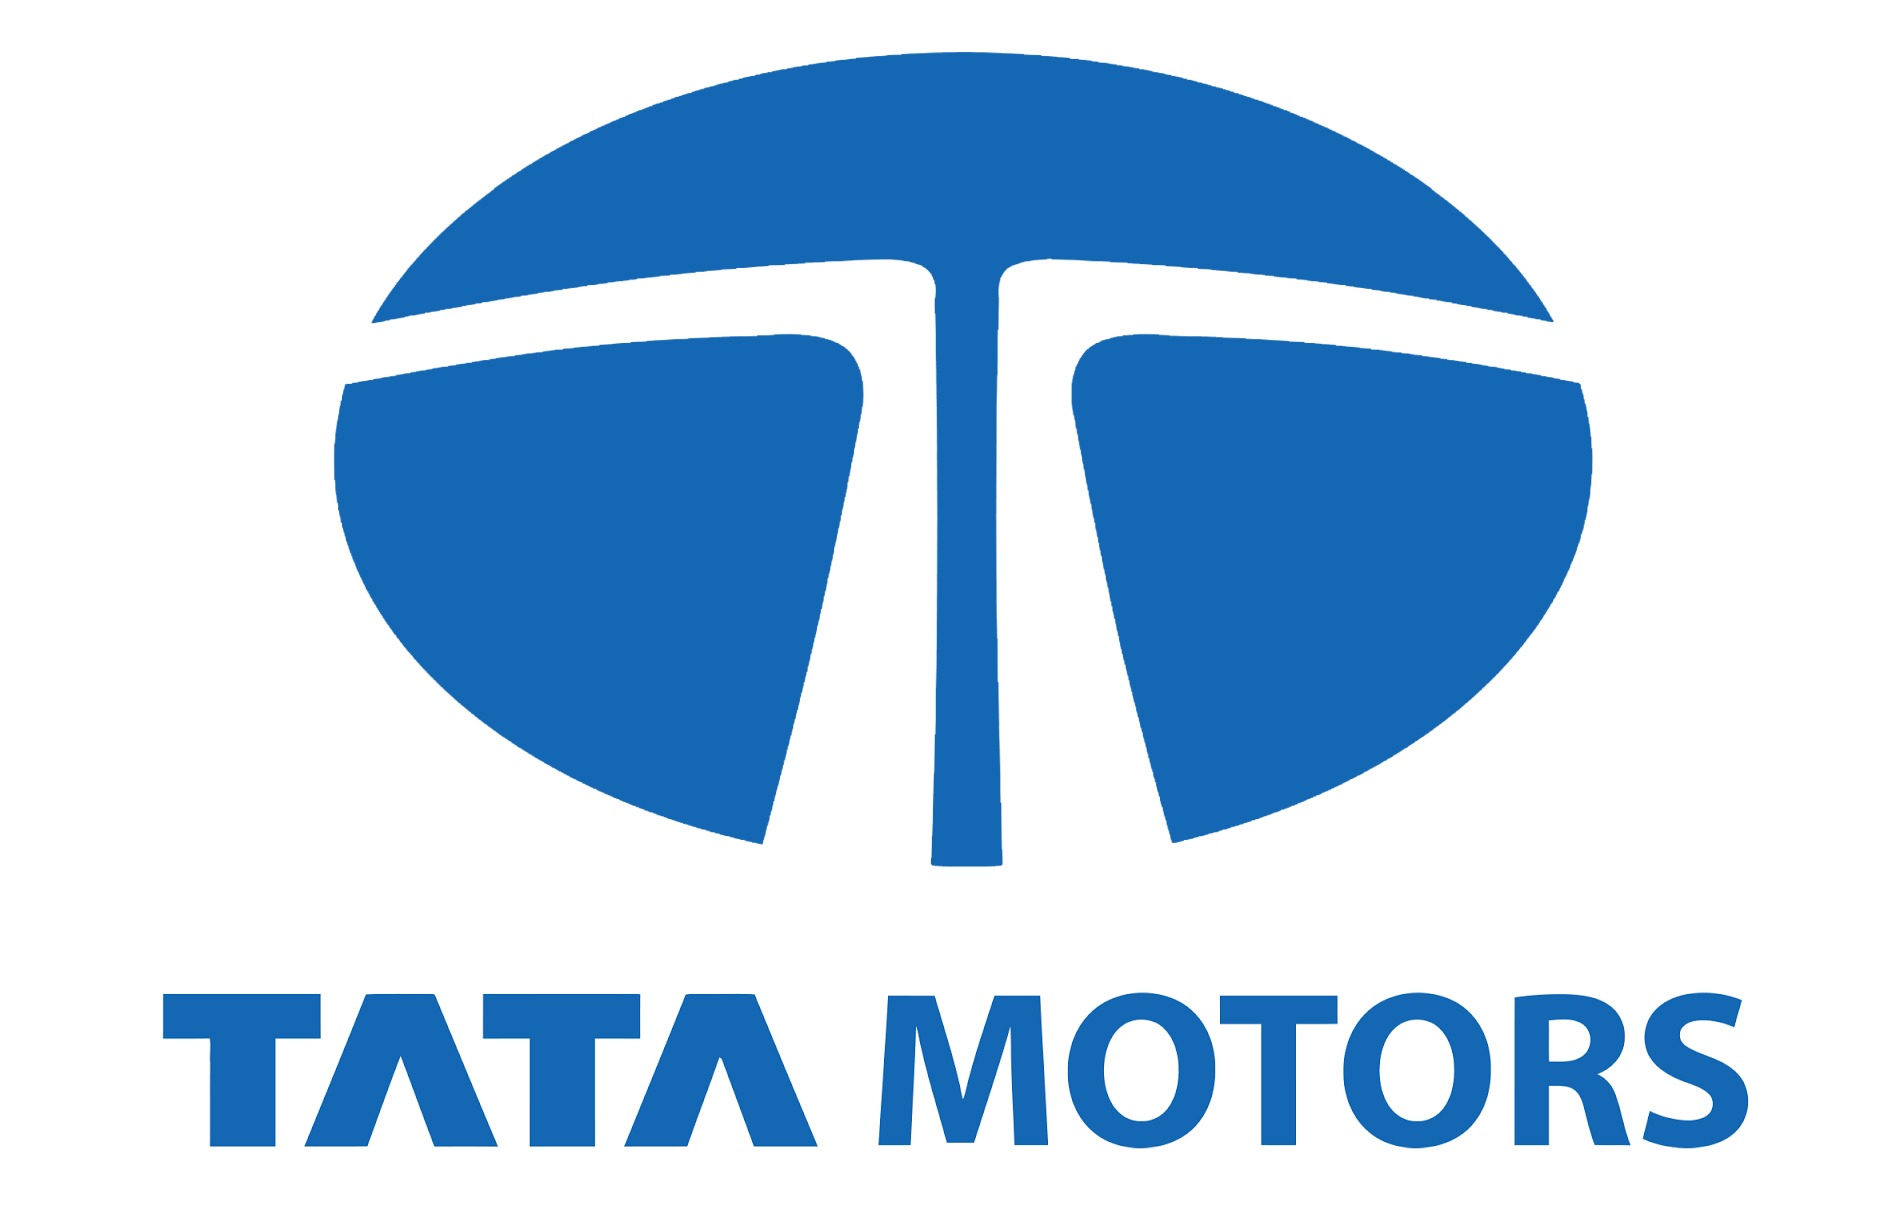 Tata Motors Cars Showroom - Commercial Automobiles|Show Room|Automotive